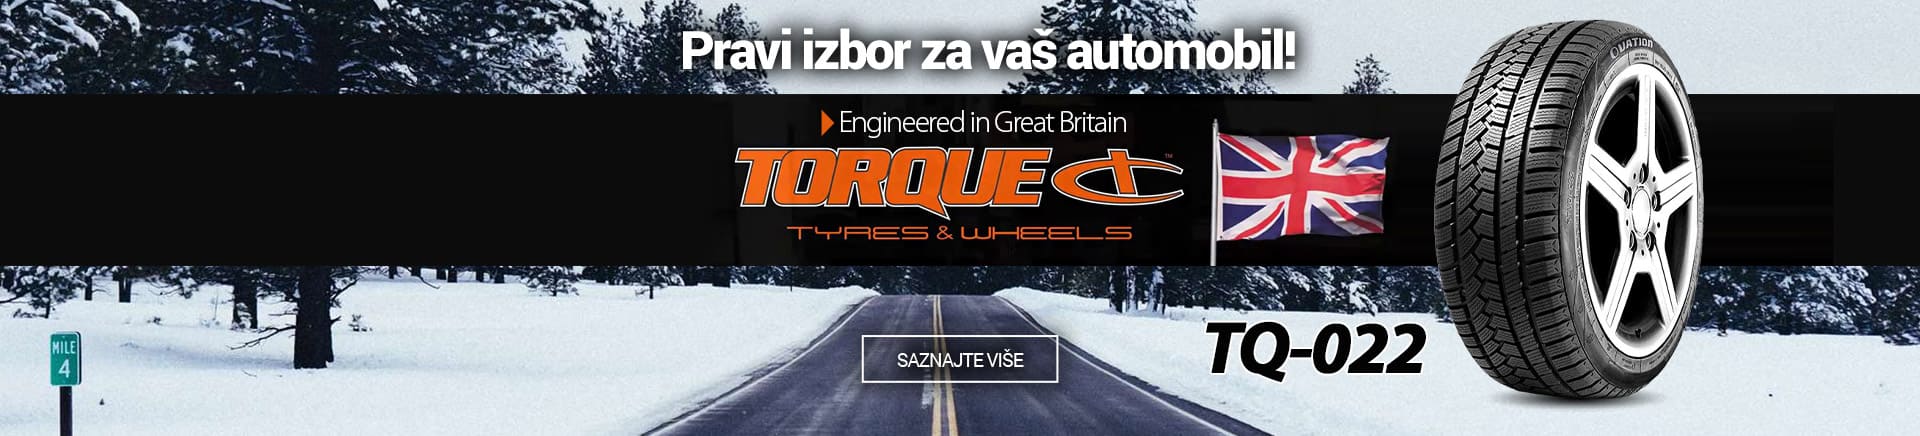 Torque Gume - Pravi izbor za vaš automobil